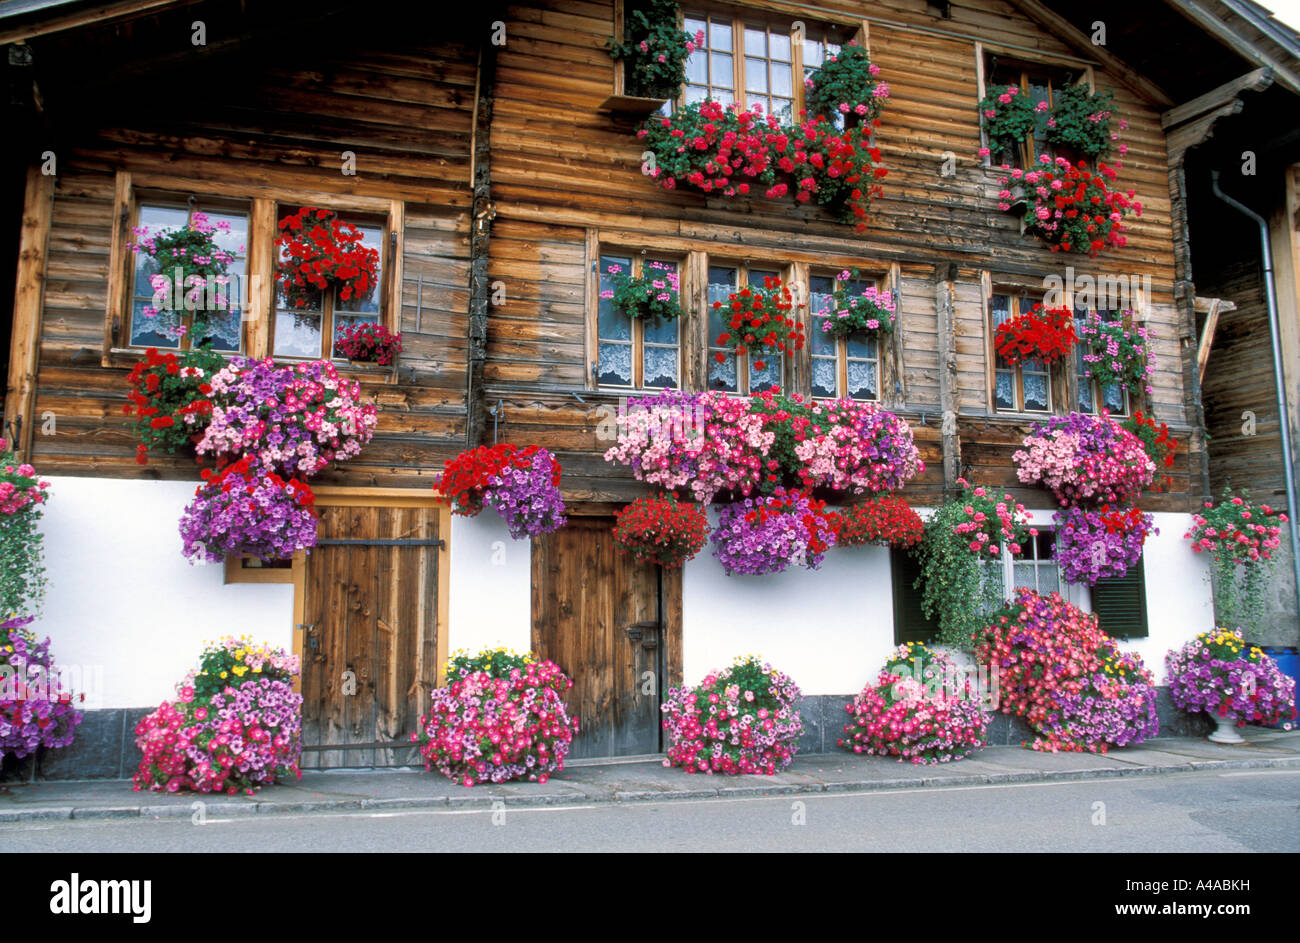 Blumentopf mit Petunien vor einem Haus Stockfoto